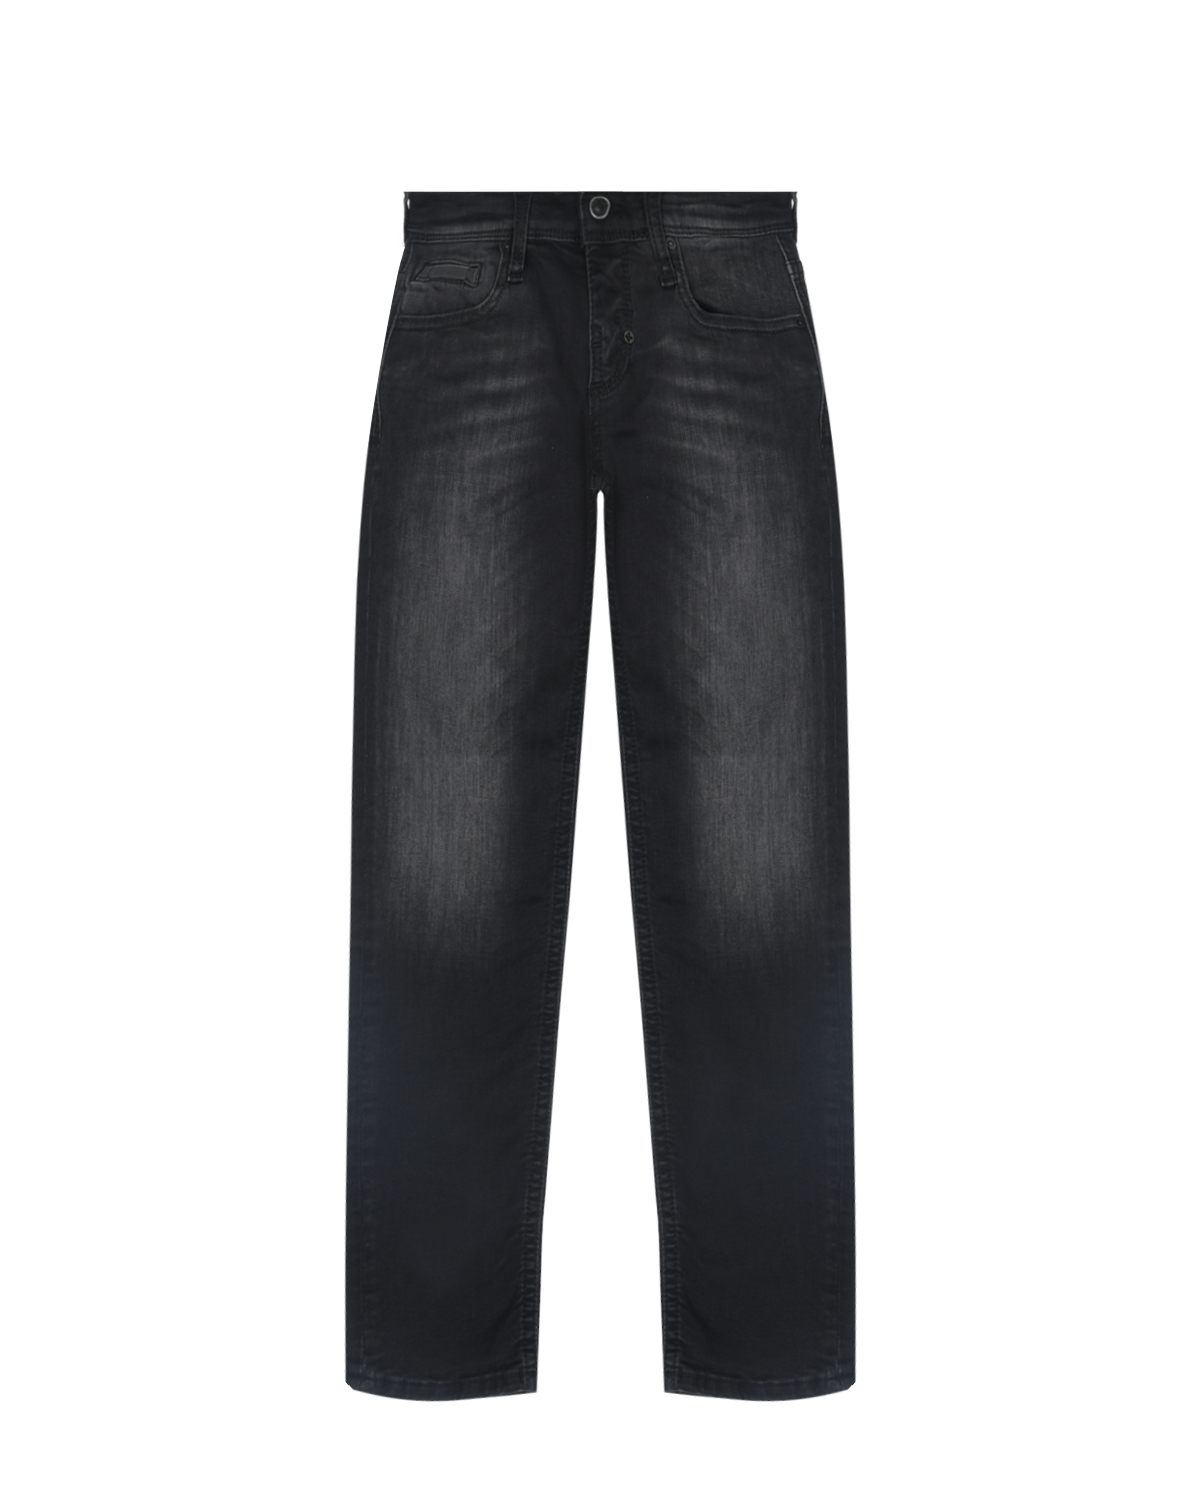 Черные зауженные джинсы Antony Morato детские, размер 116, цвет черный